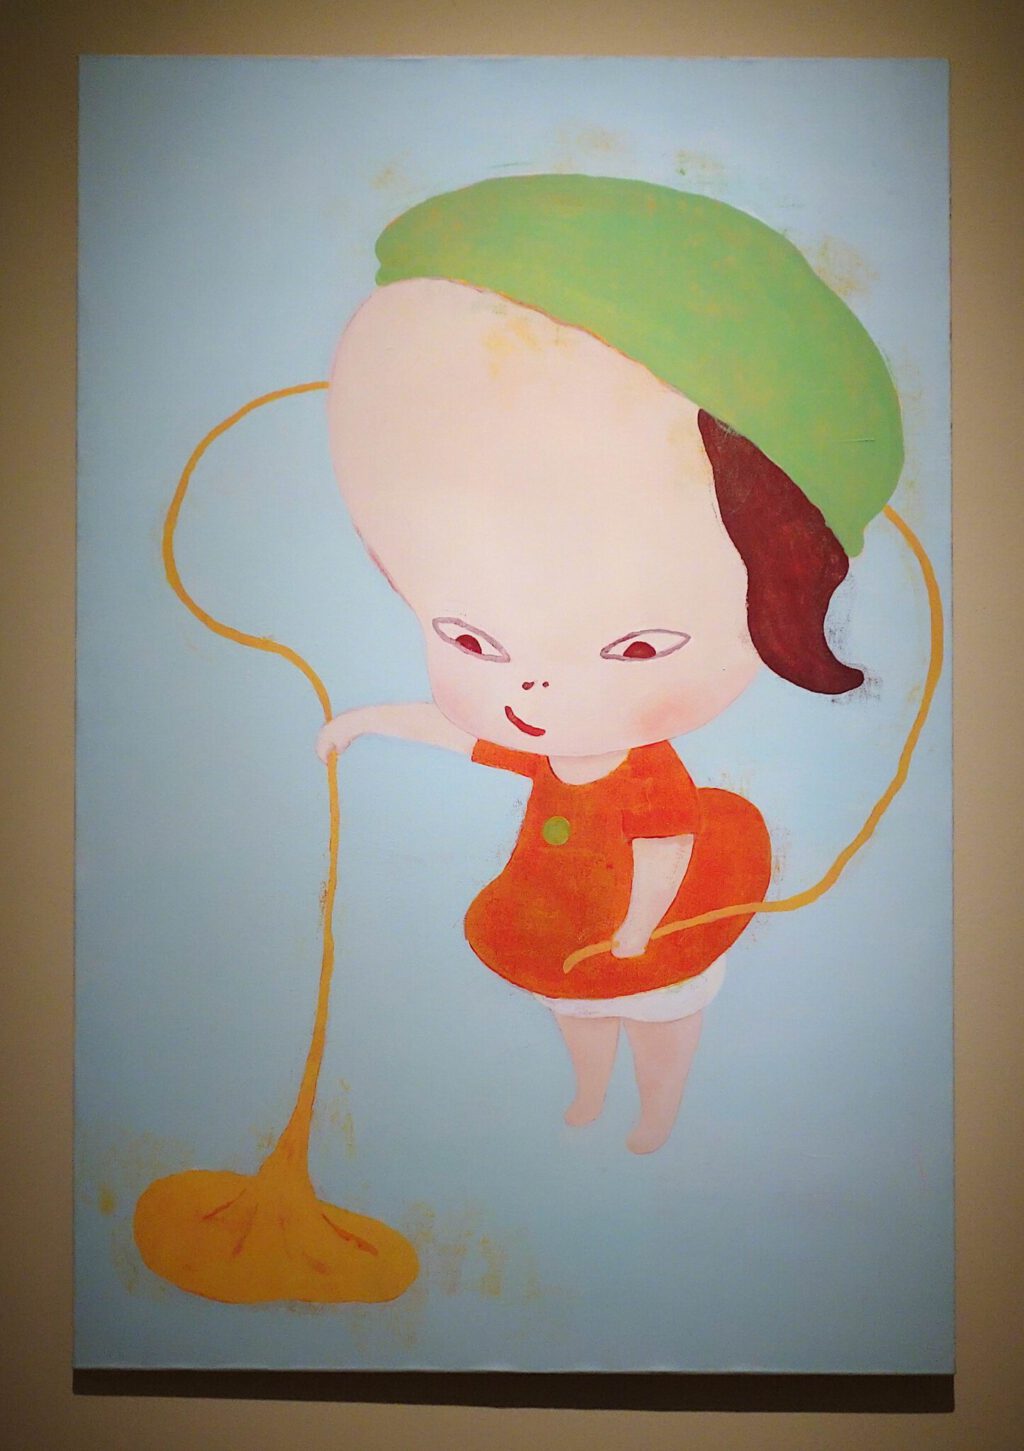 奈良美智 NARA Yoshitomo 「地雷探知機」Mine Detector 1993. Acrylic on canvas, 150 x 100 cm. 高松市美術館寄託 : Entrusted to Takamatsu Art Museum